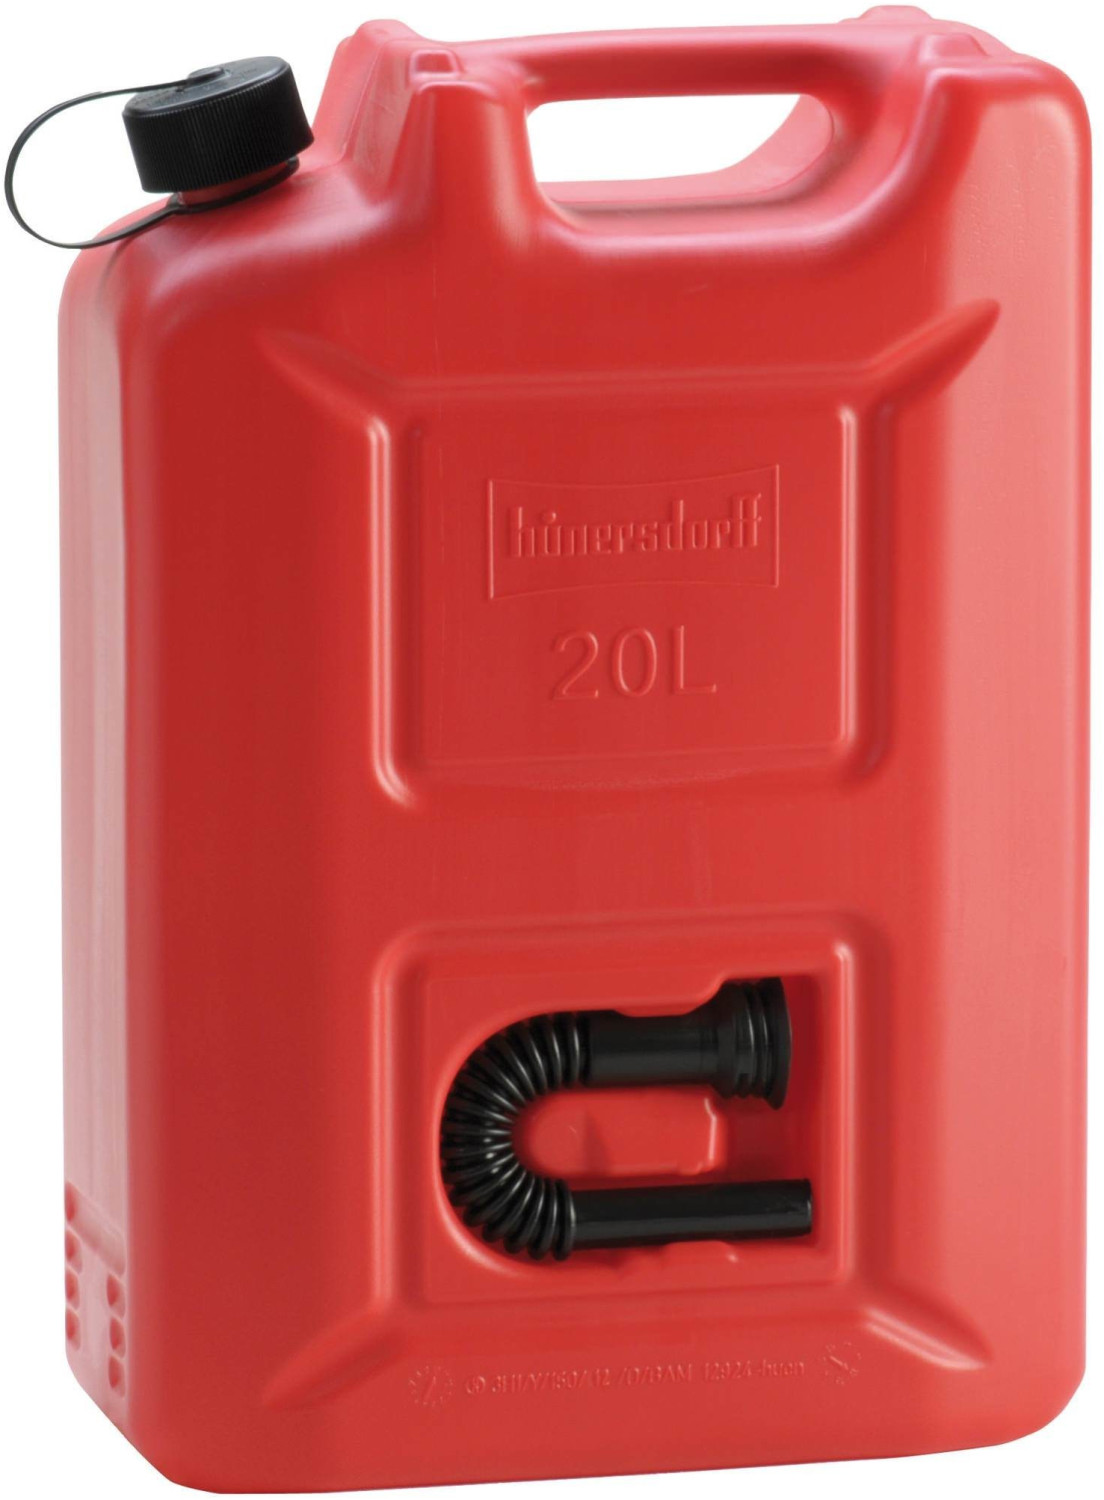 Hünersdorff Benzinkanister Standard 5 l rot (811560) ab 5,99